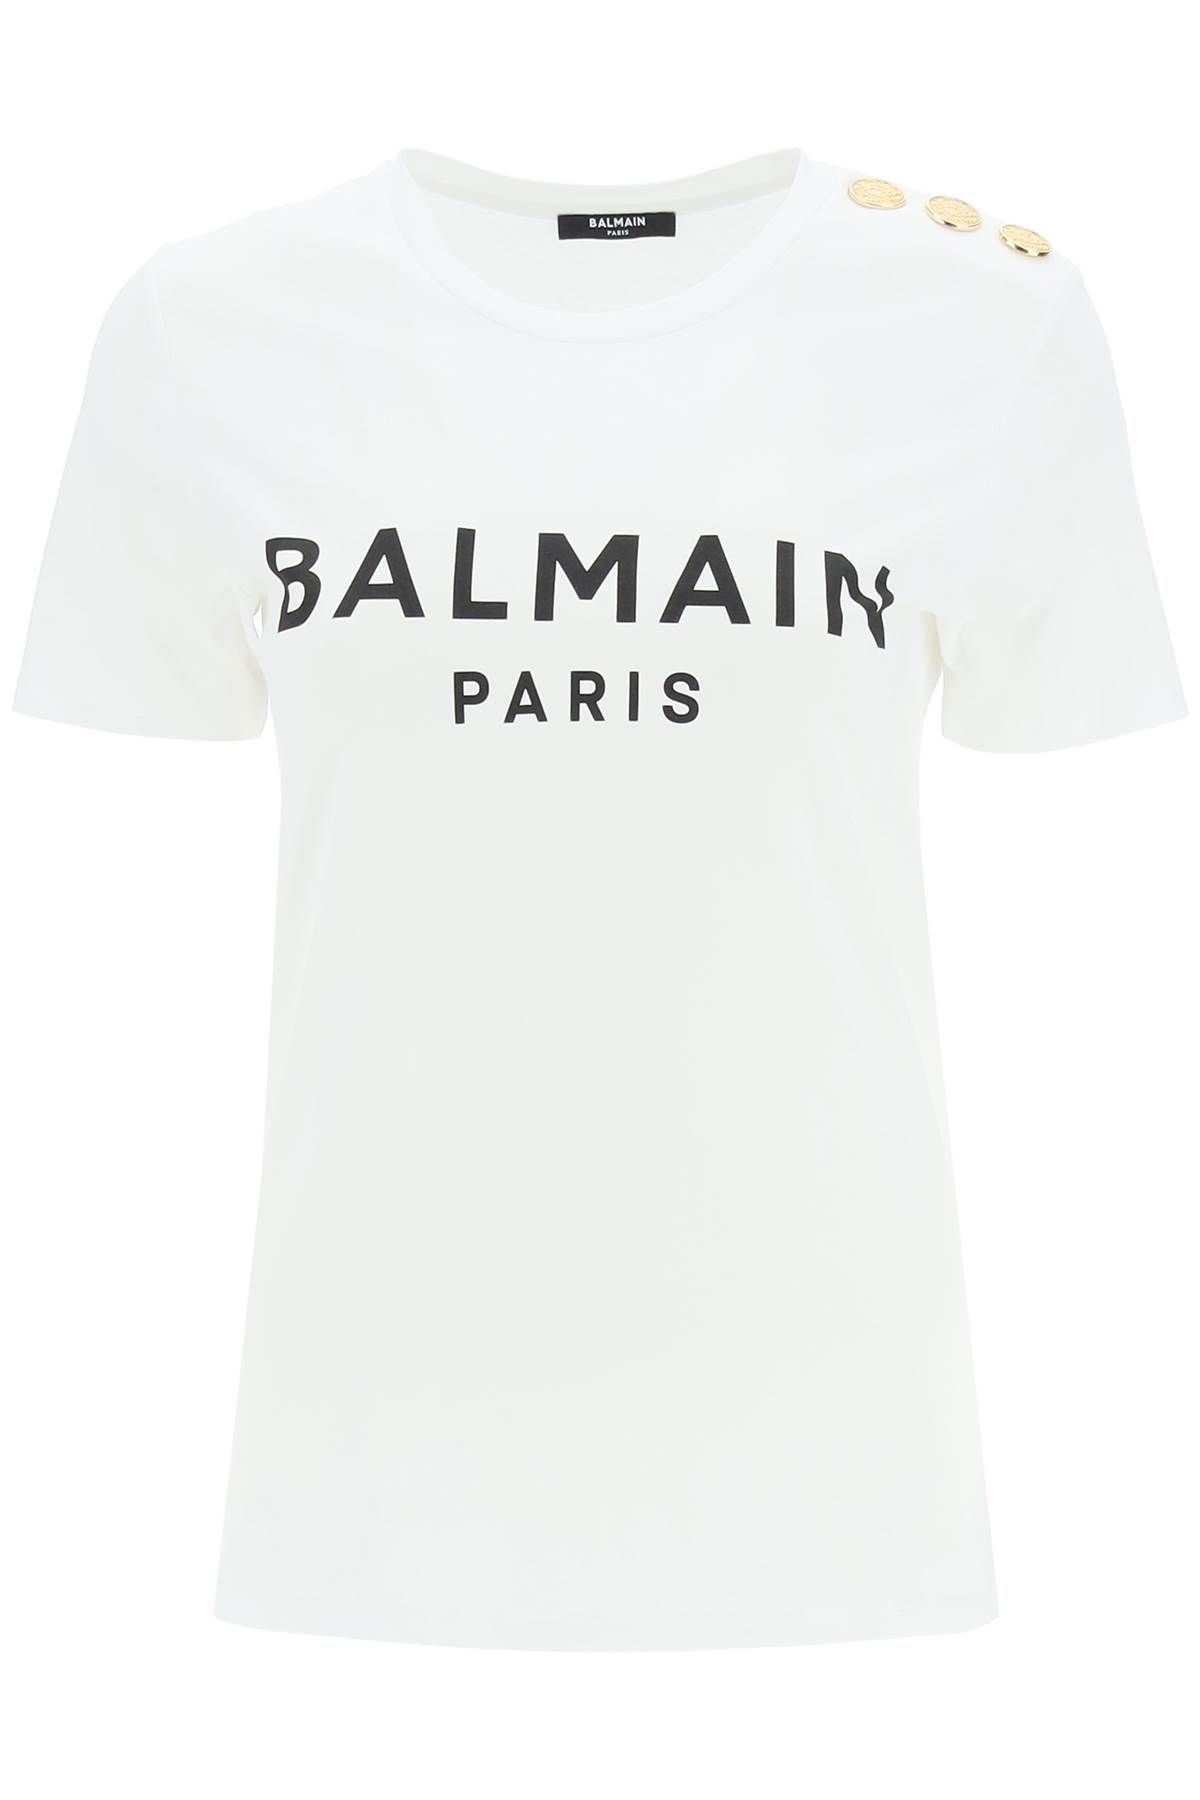 Balmain BALMAIN logo t-shirt with decorative buttons